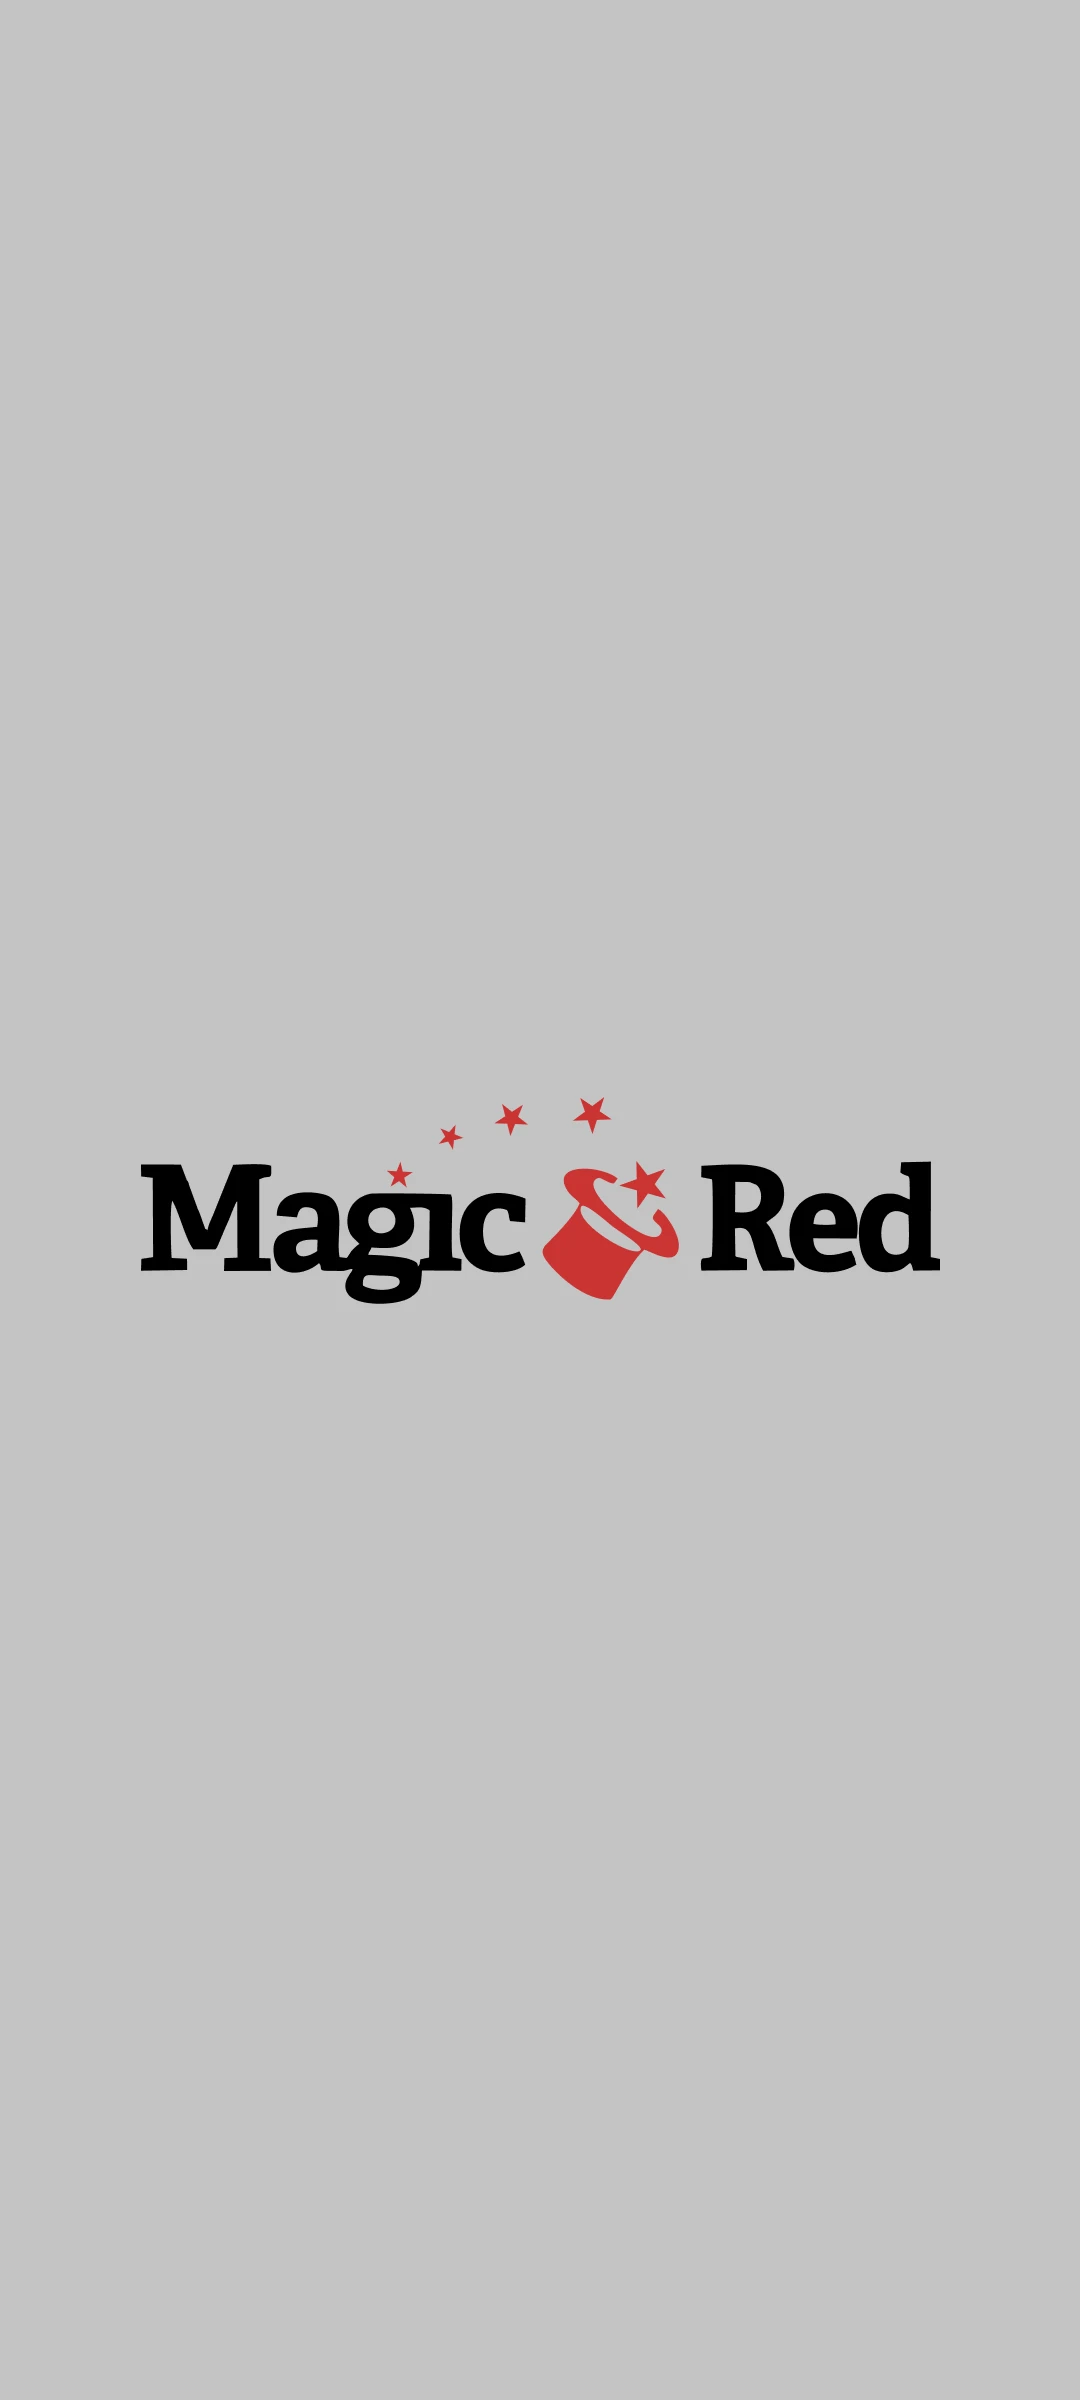 Depois de fazer o login, você pode começar a usar o Magic Red mobile em todos os dispositivos Android.